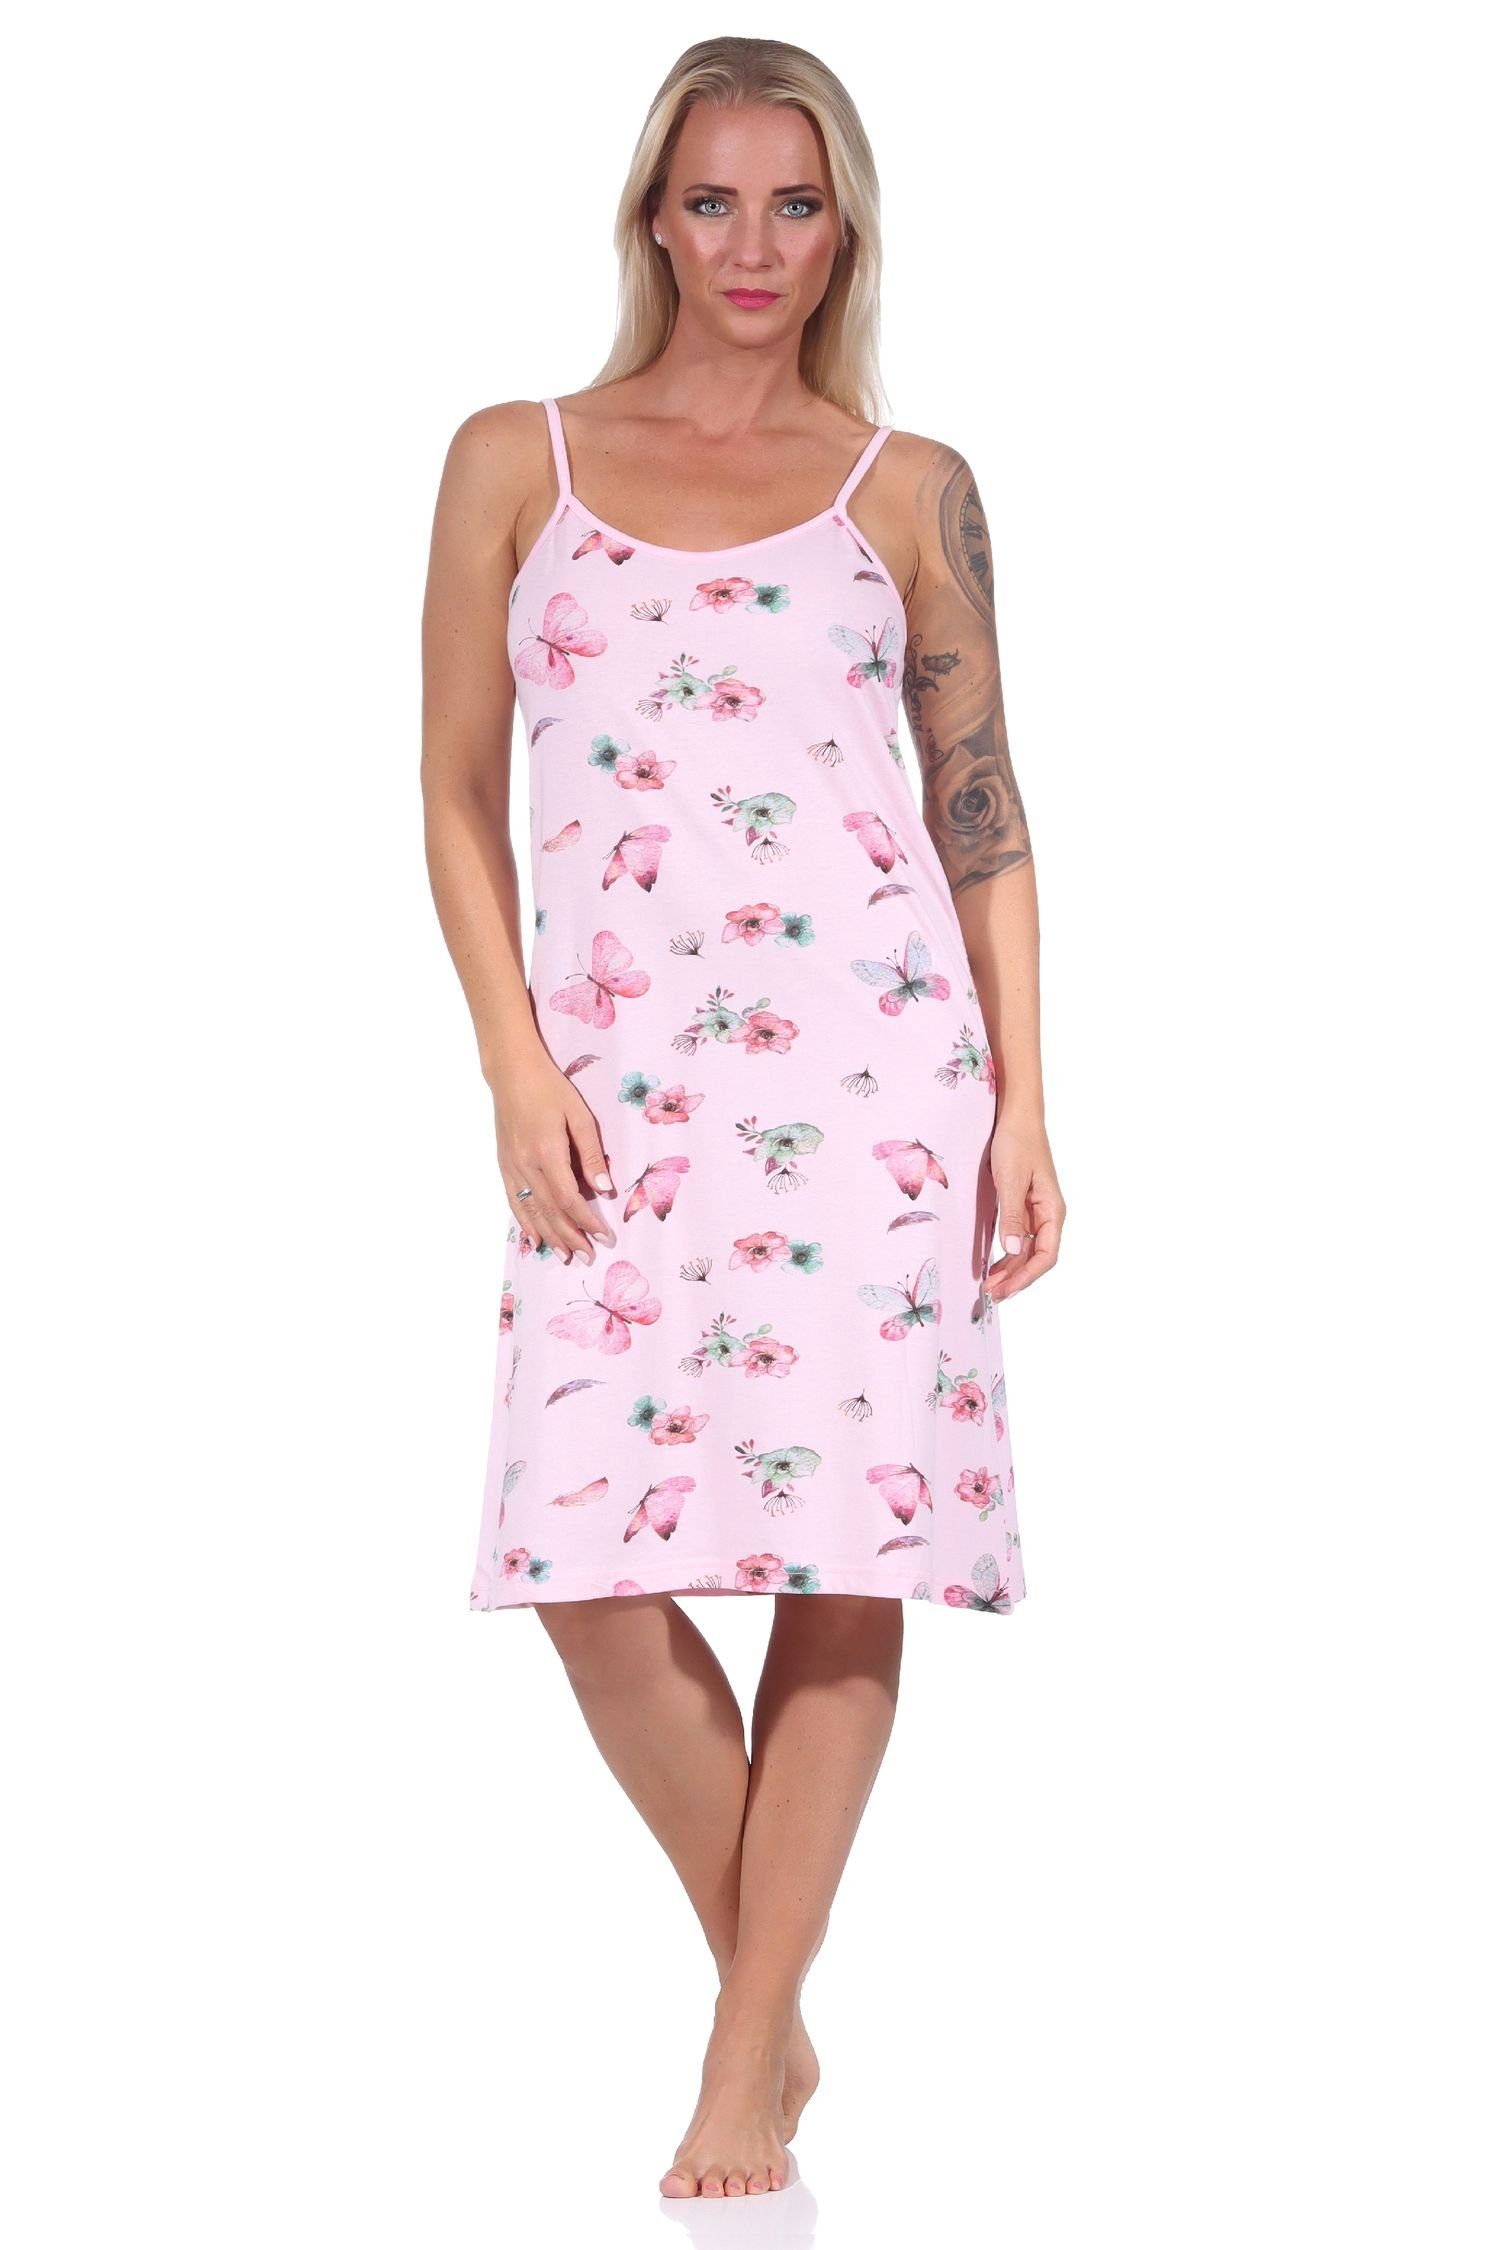 Normann Nachthemd Damen rosa - auch Übergrößen Nachthemd, Design florales in Spaghetti